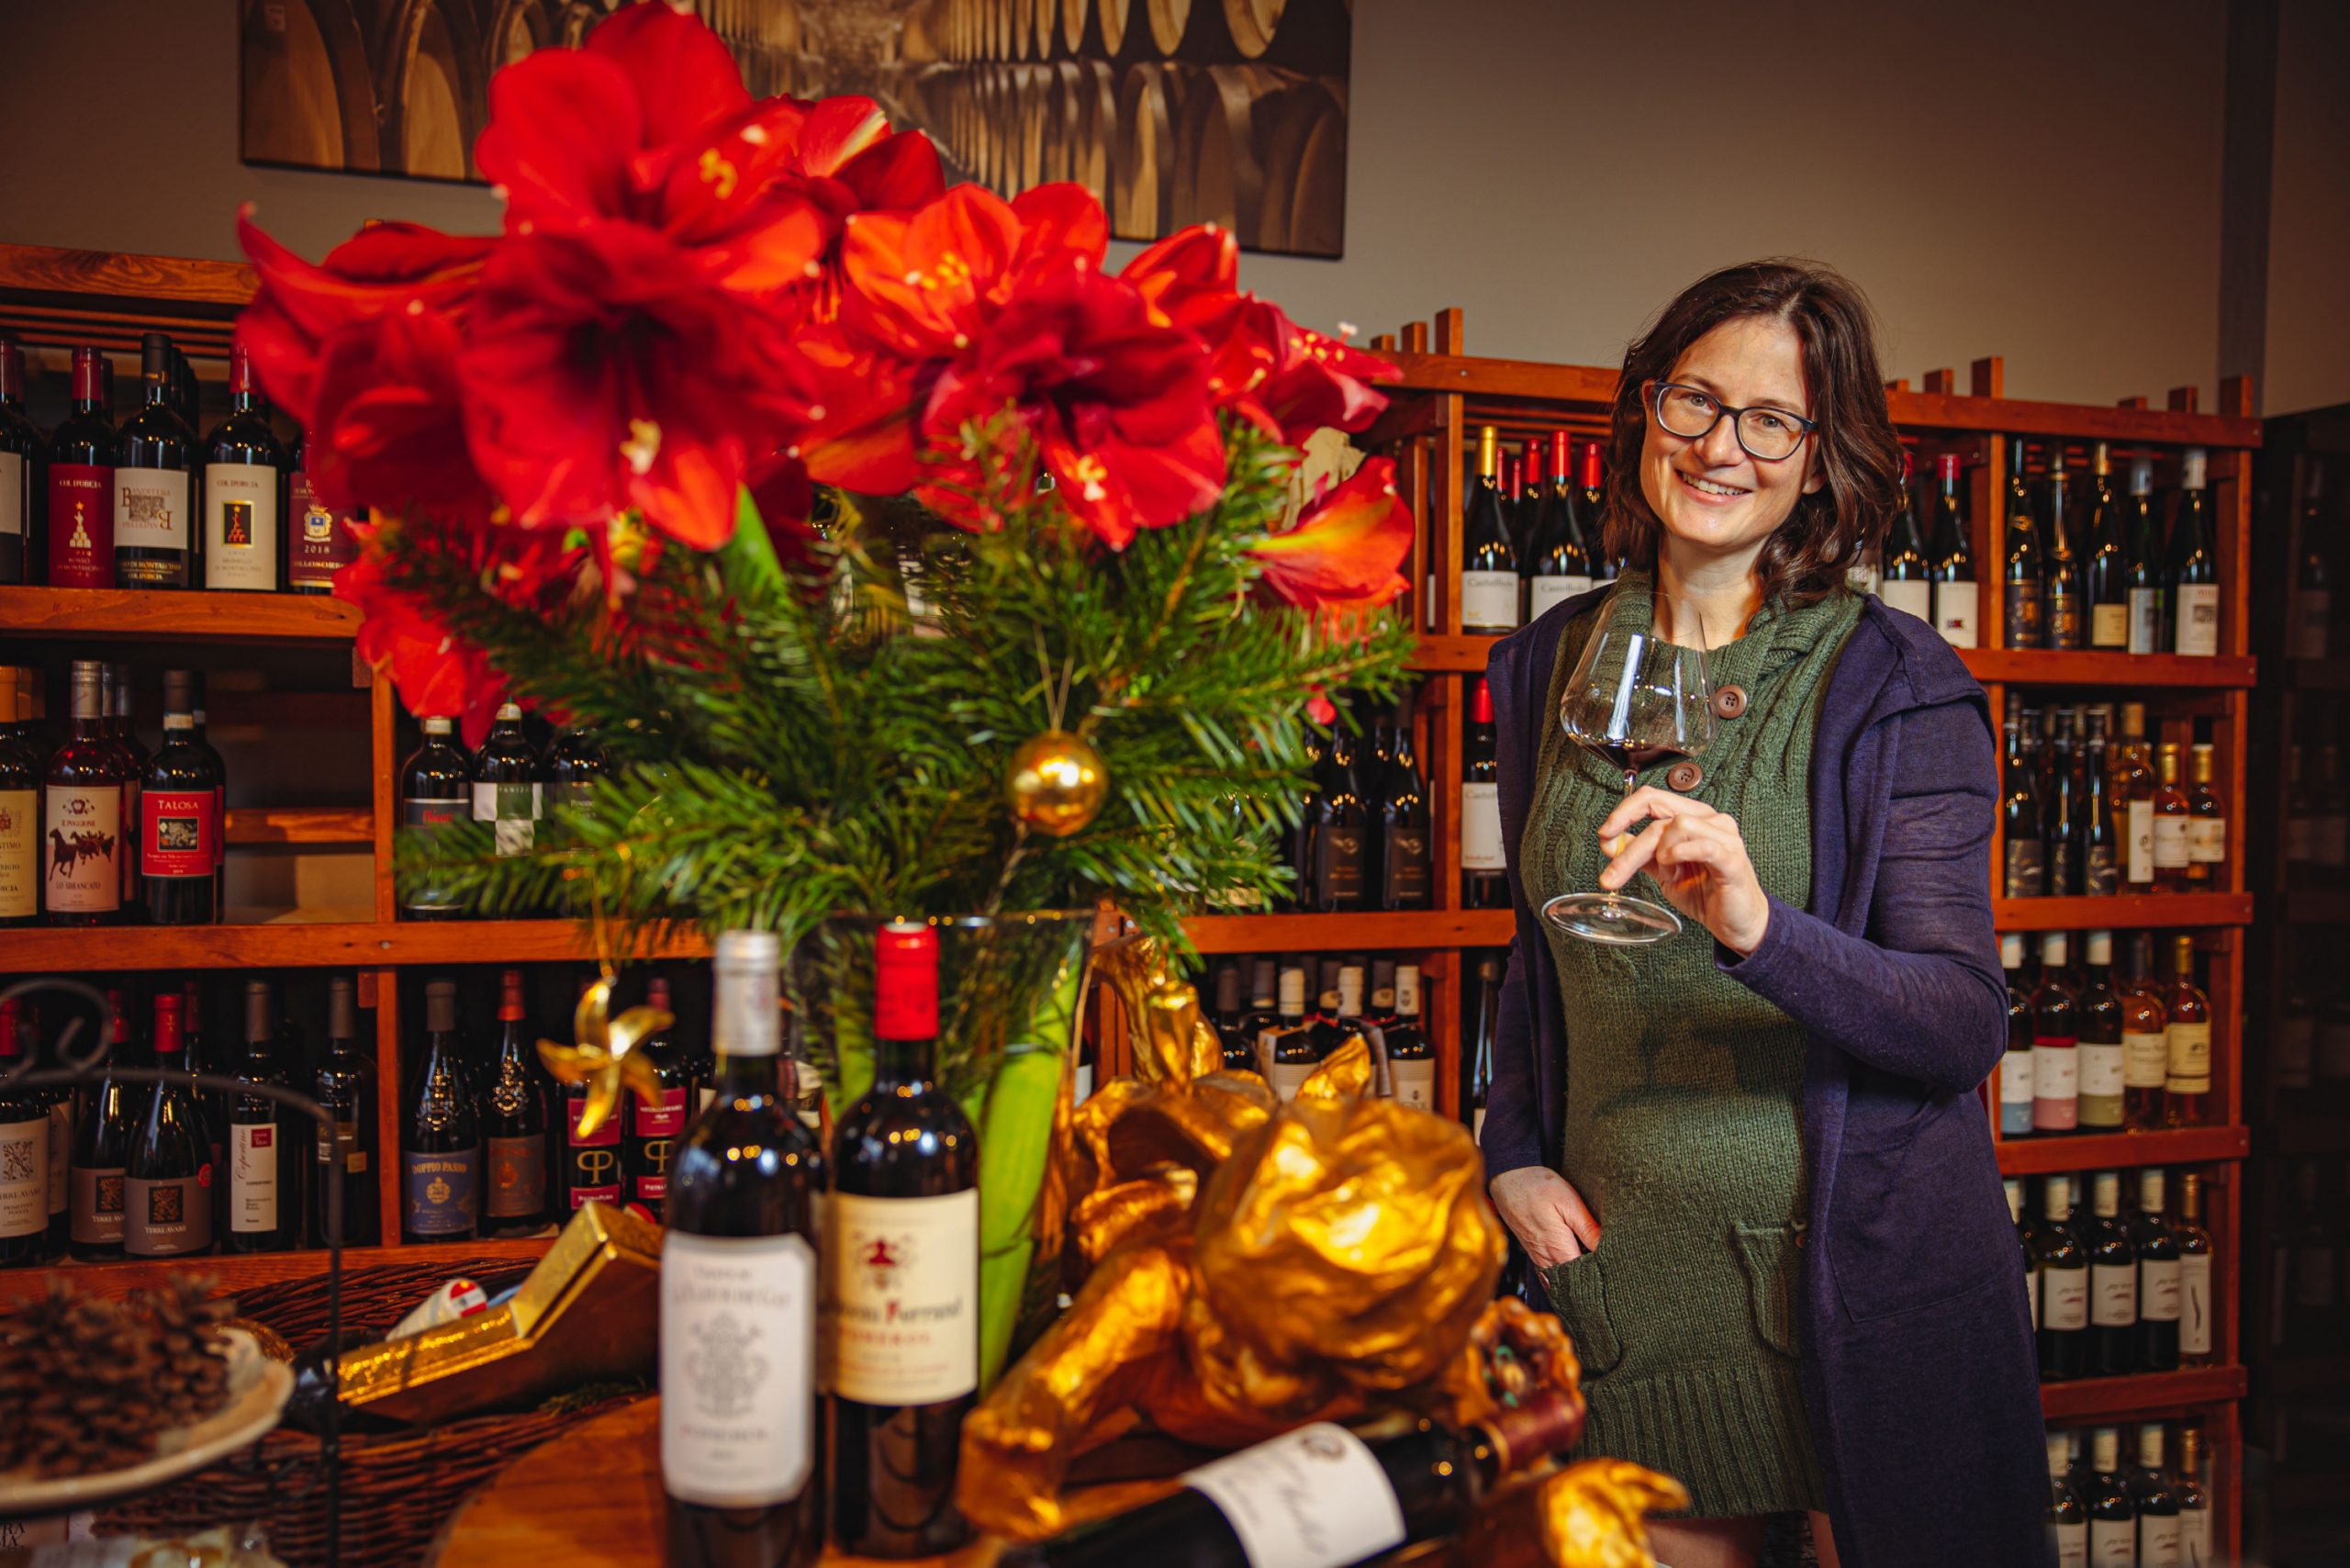 Anette Wabnitz, Inhaberin des Weinhandels „Weynstock“ in Ottensen, präsentiert ausgesuchte Weine für die Feiertage.